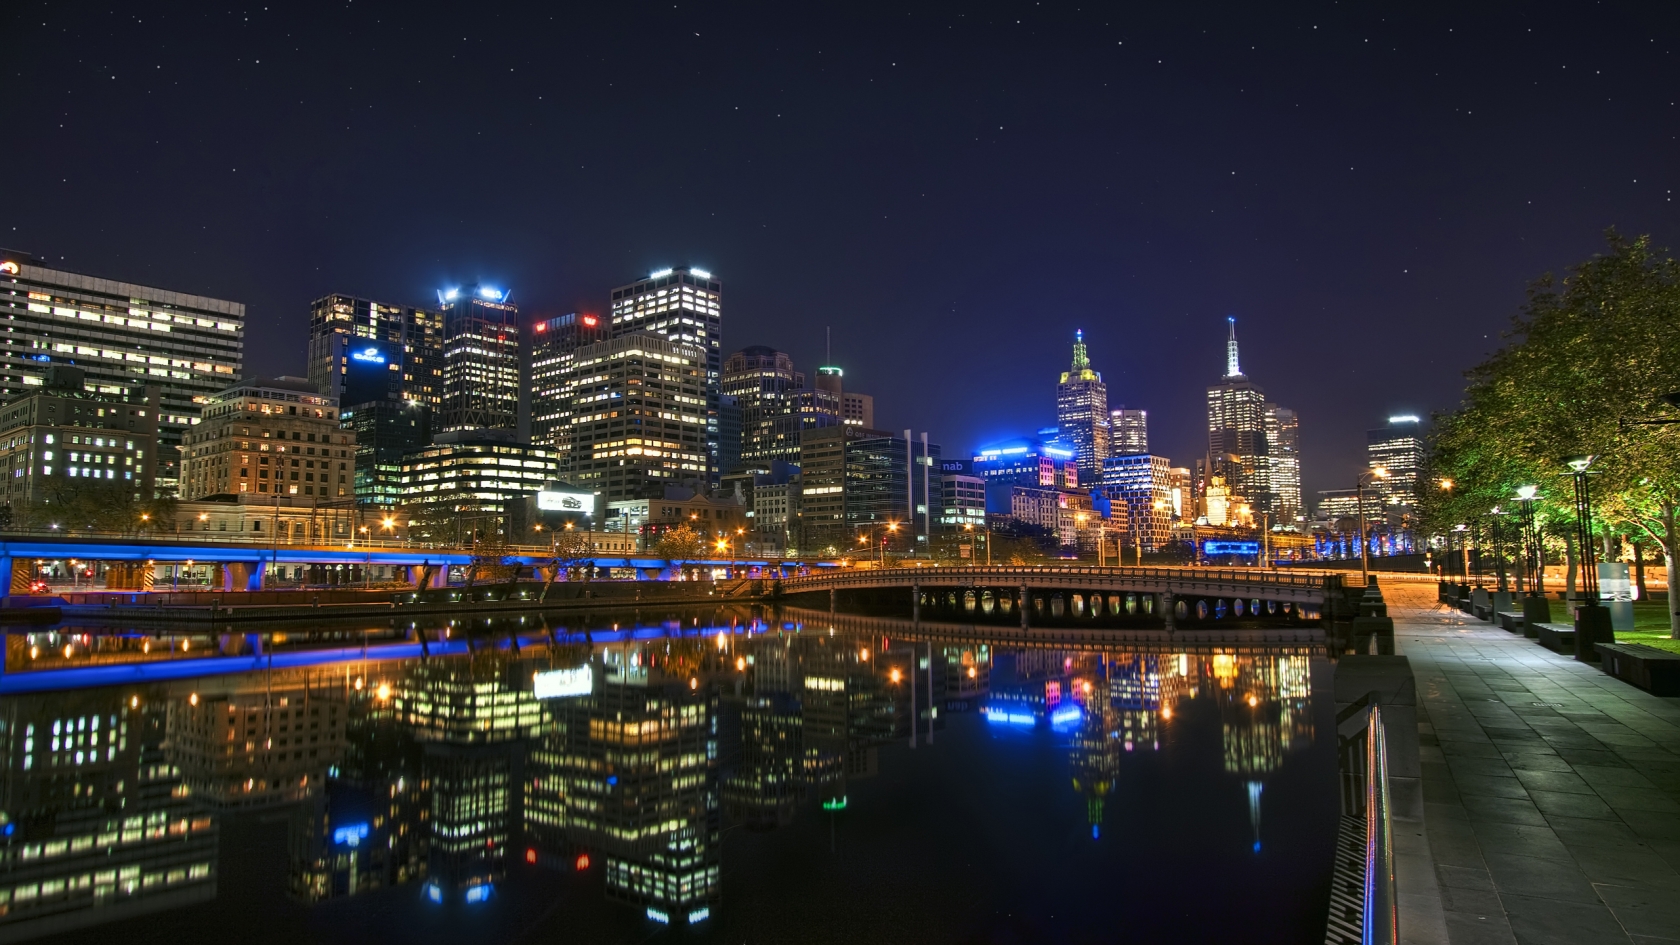 Melbourne Night Landscape for 1680 x 945 HDTV resolution